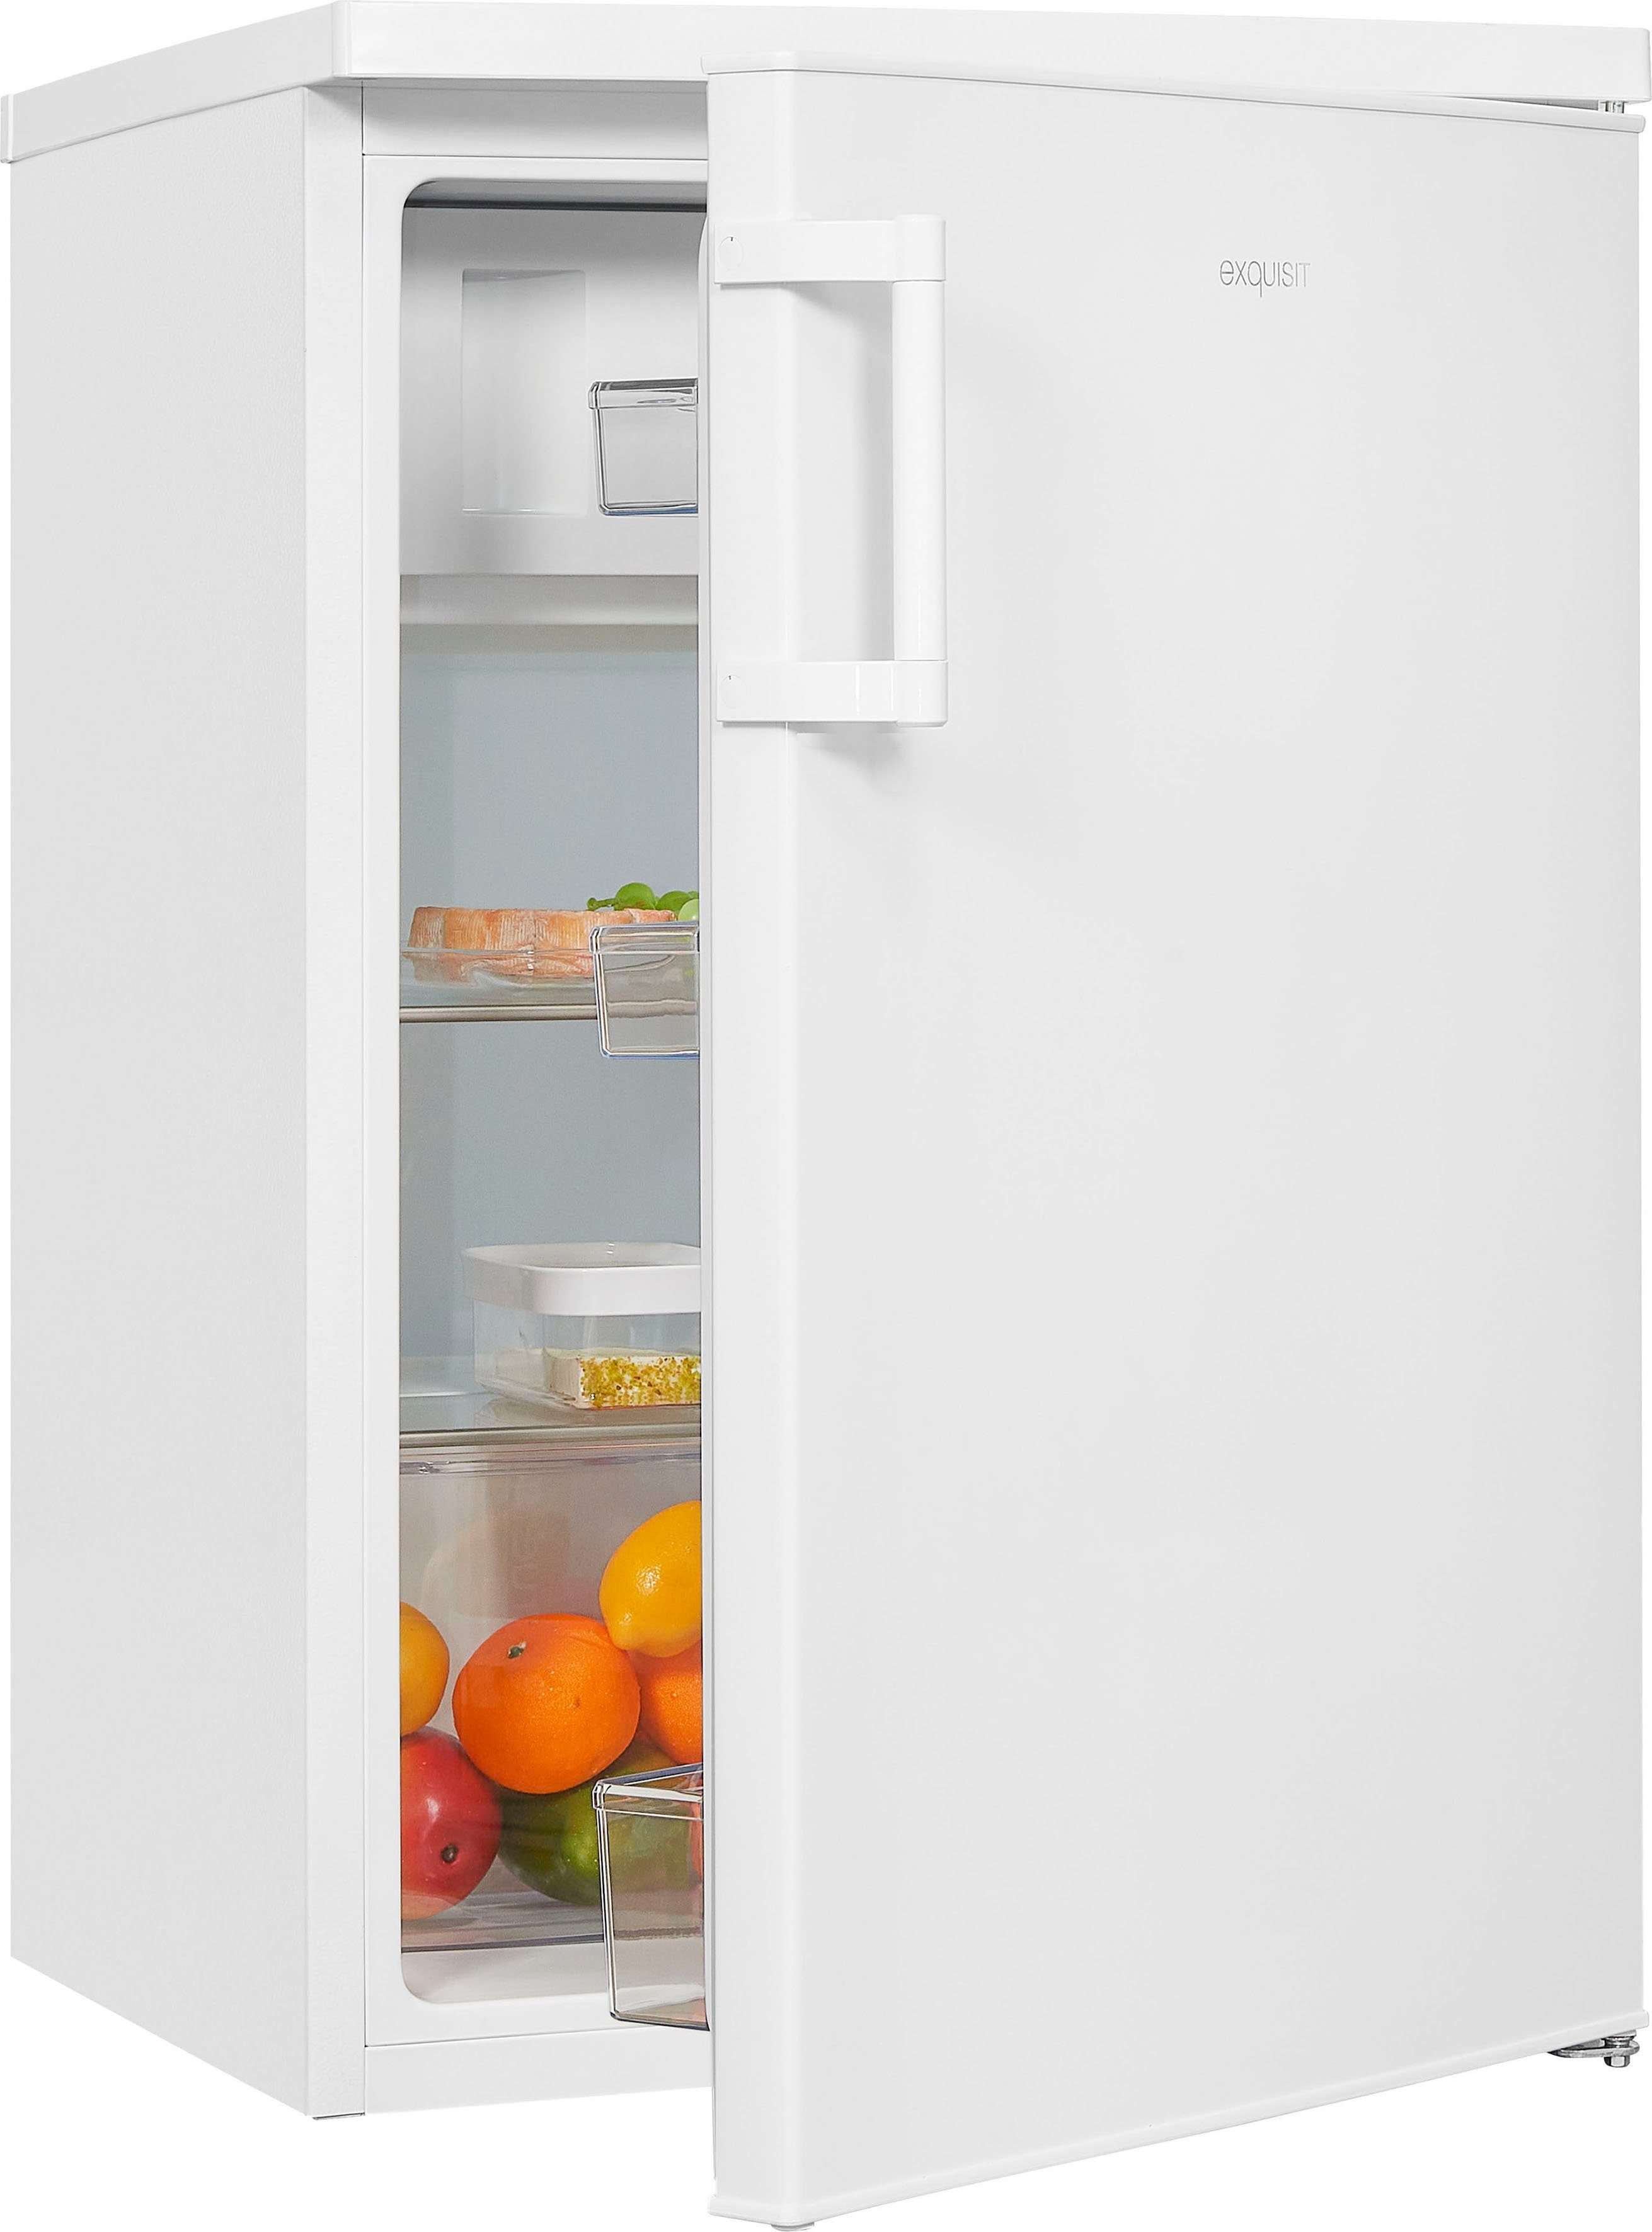 exquisit Kühlschrank KS16-4-H-010E weiss, 85 cm hoch, 56 cm breit,  LED-Licht - helle und effiziente Ausleuchtung des Innenraums